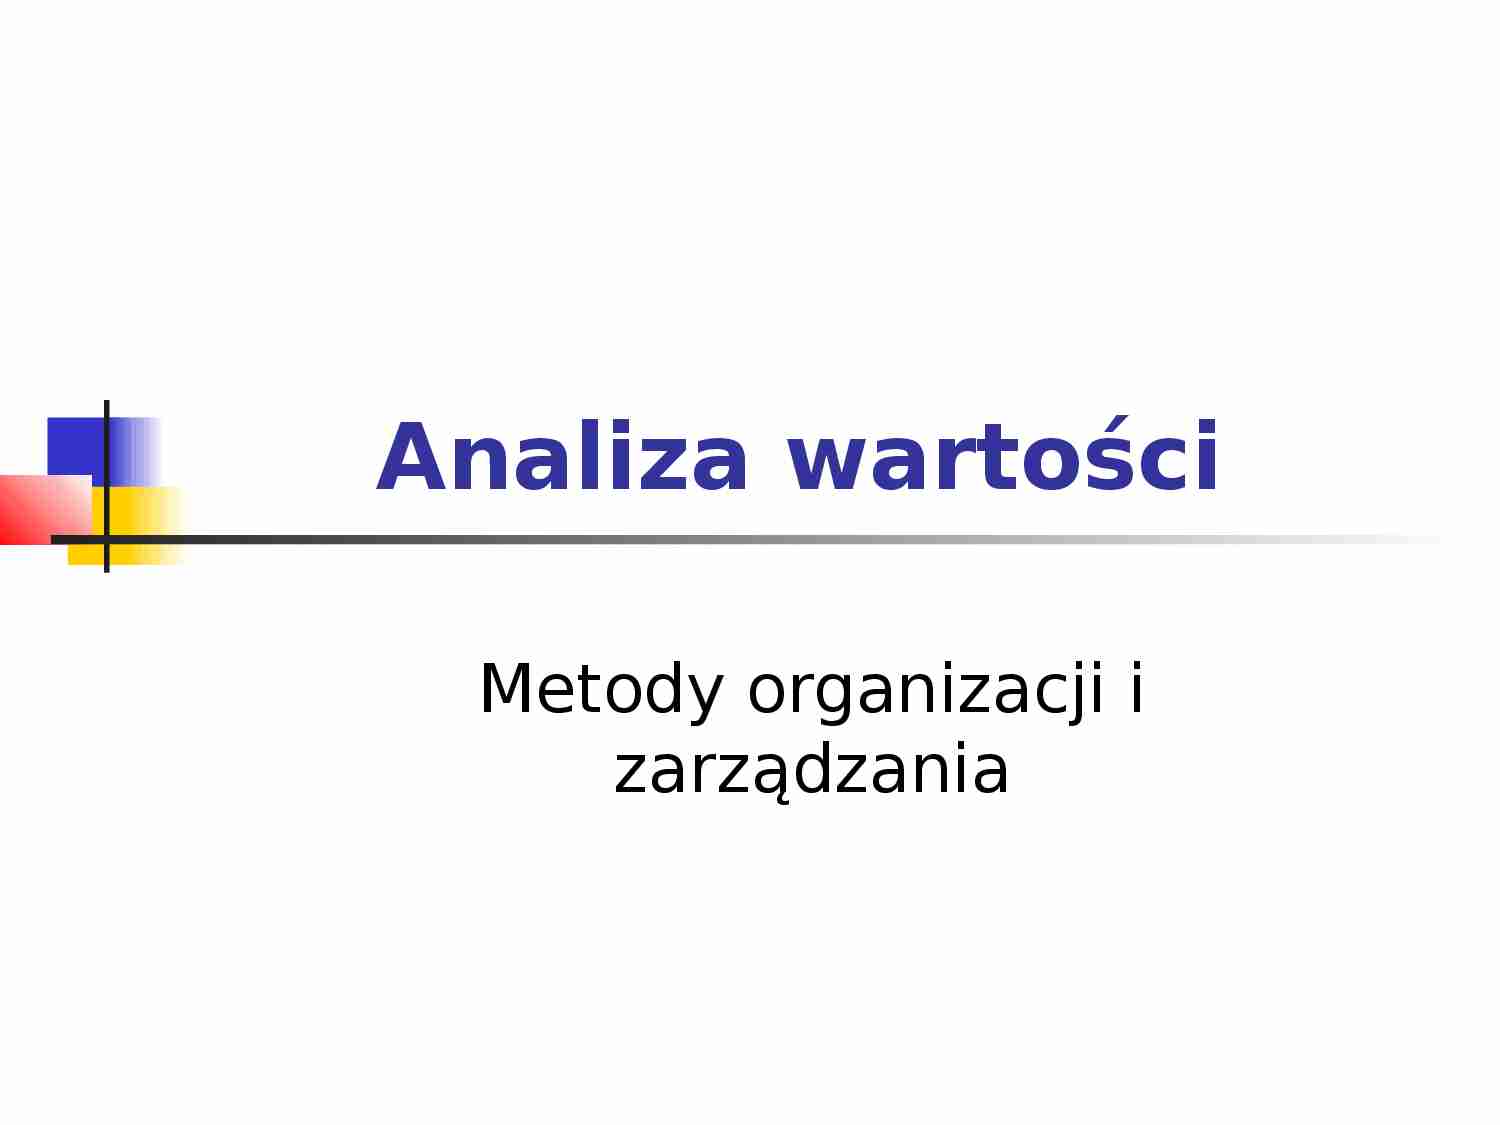 Metody organizacji i zarządzania - Analiza wartości - prezentacja - strona 1